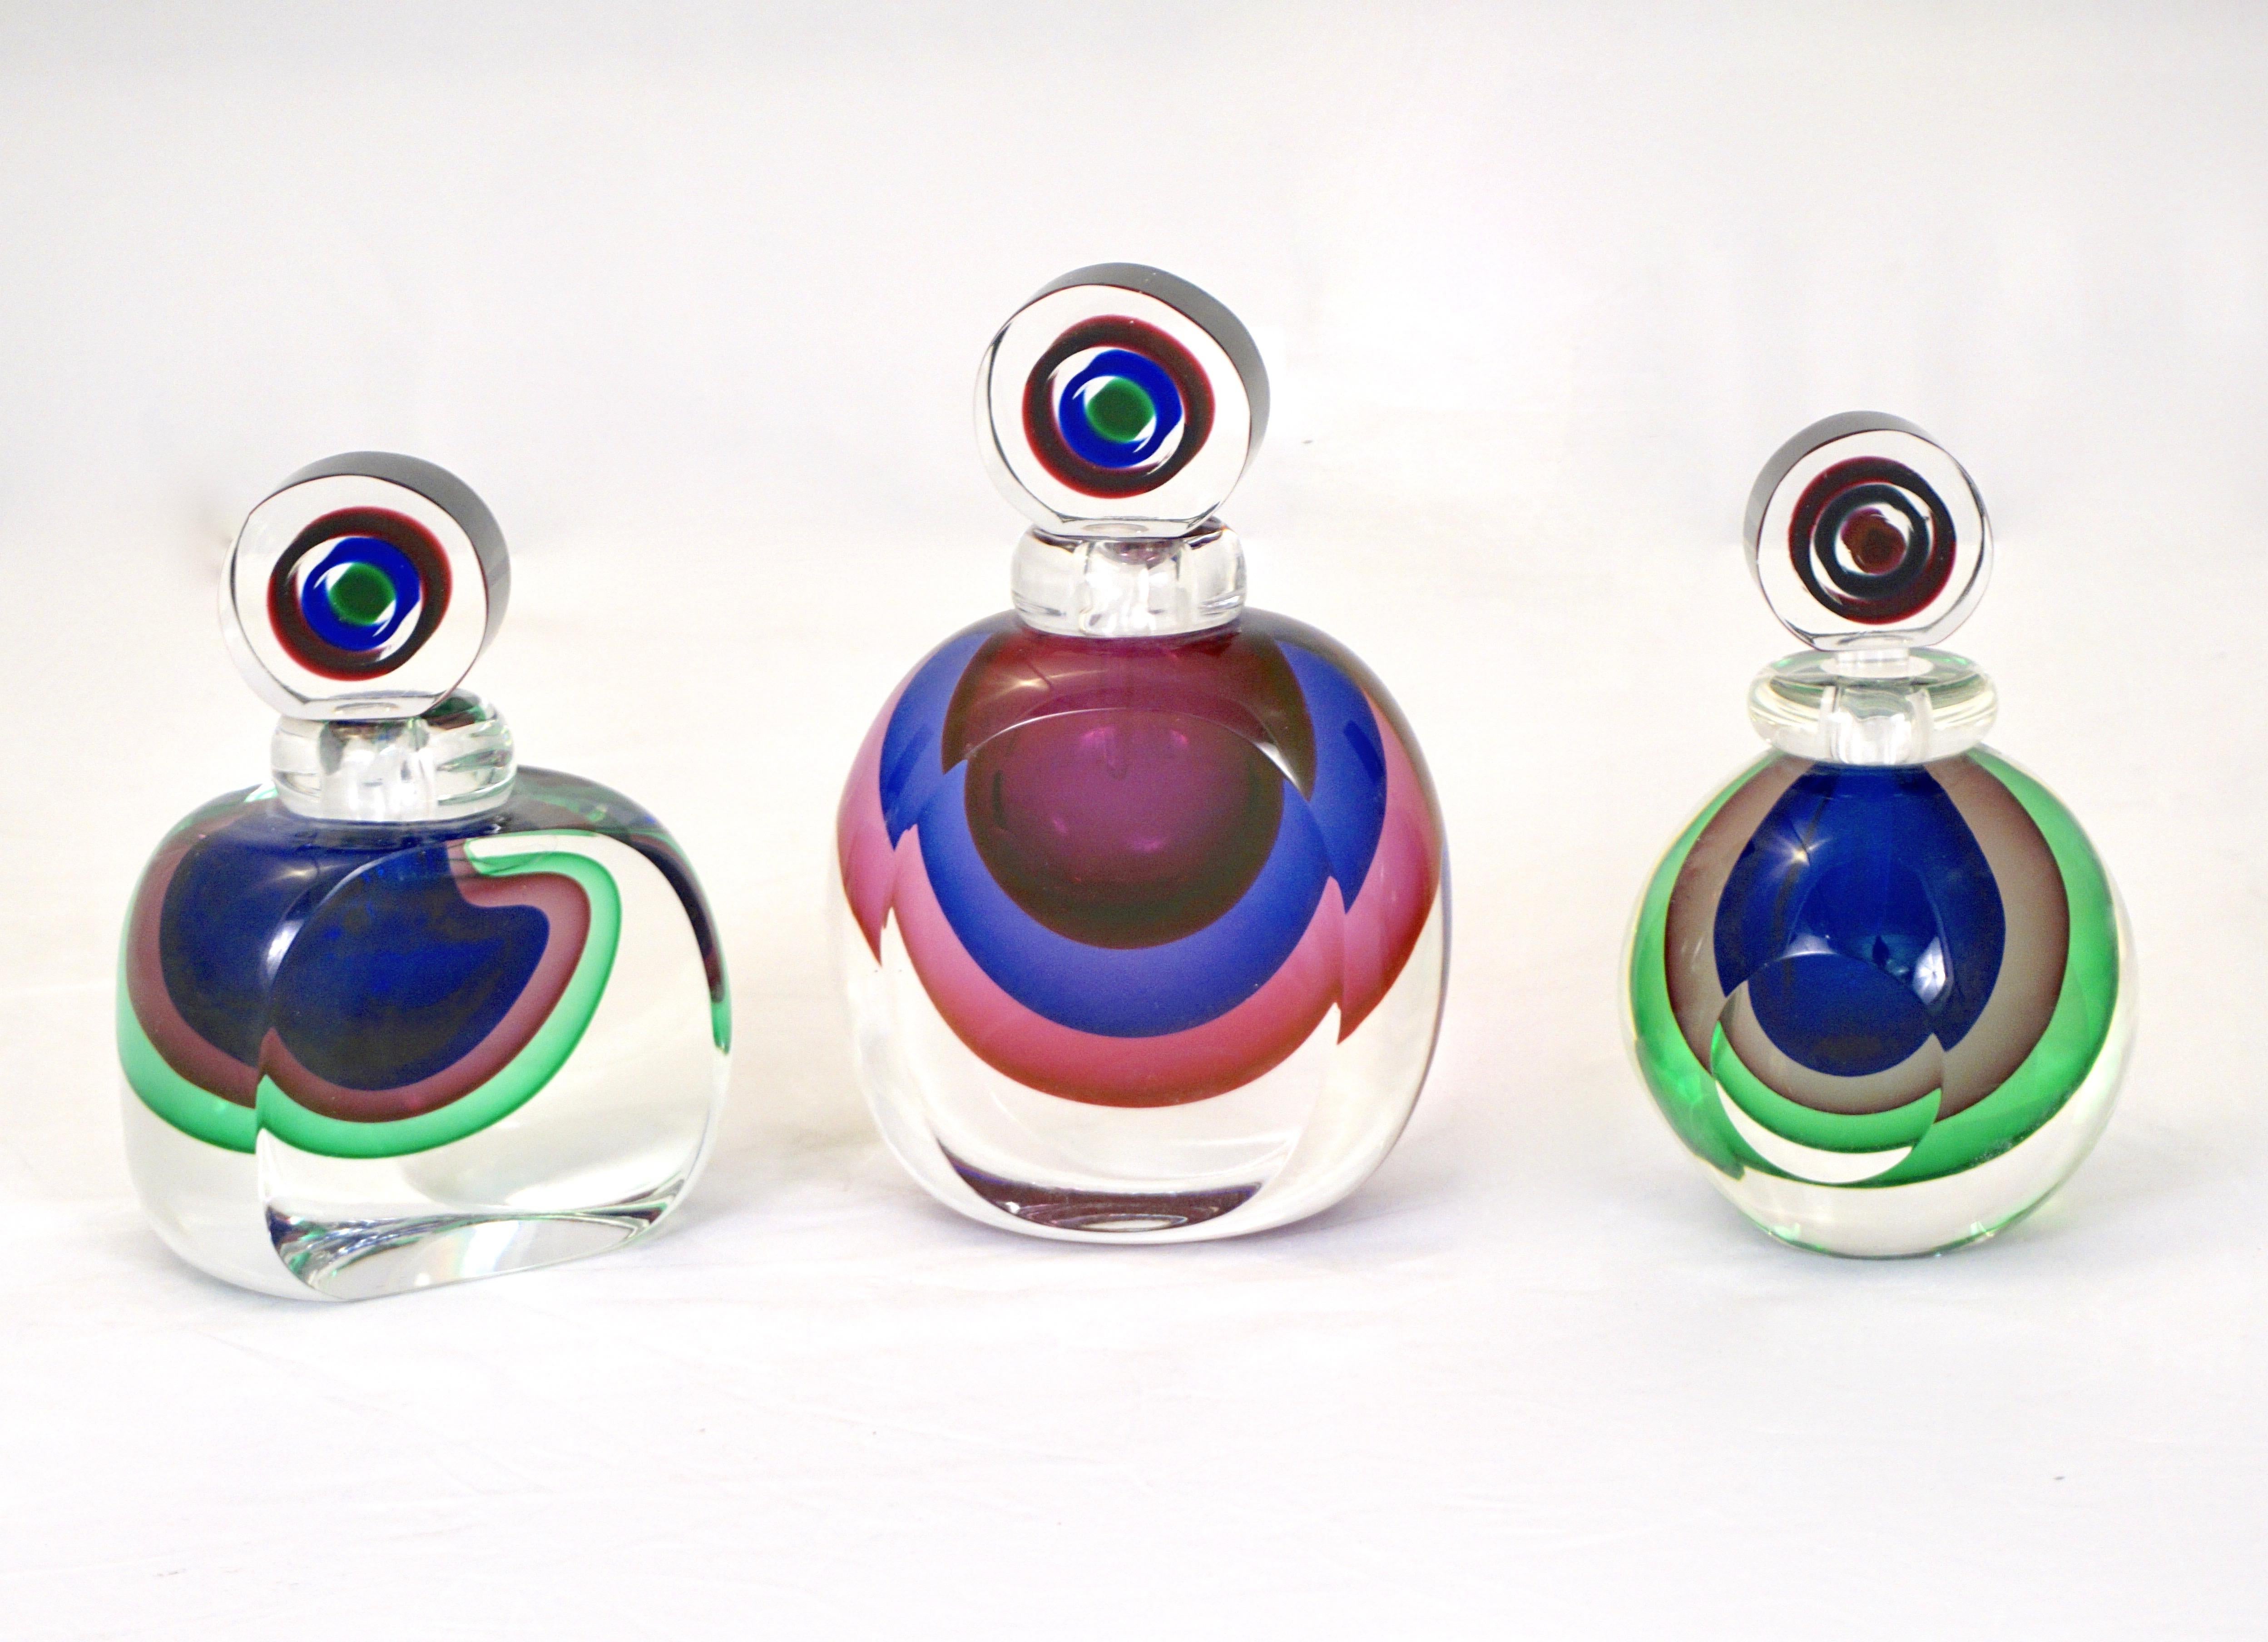 1990s perfume bottles